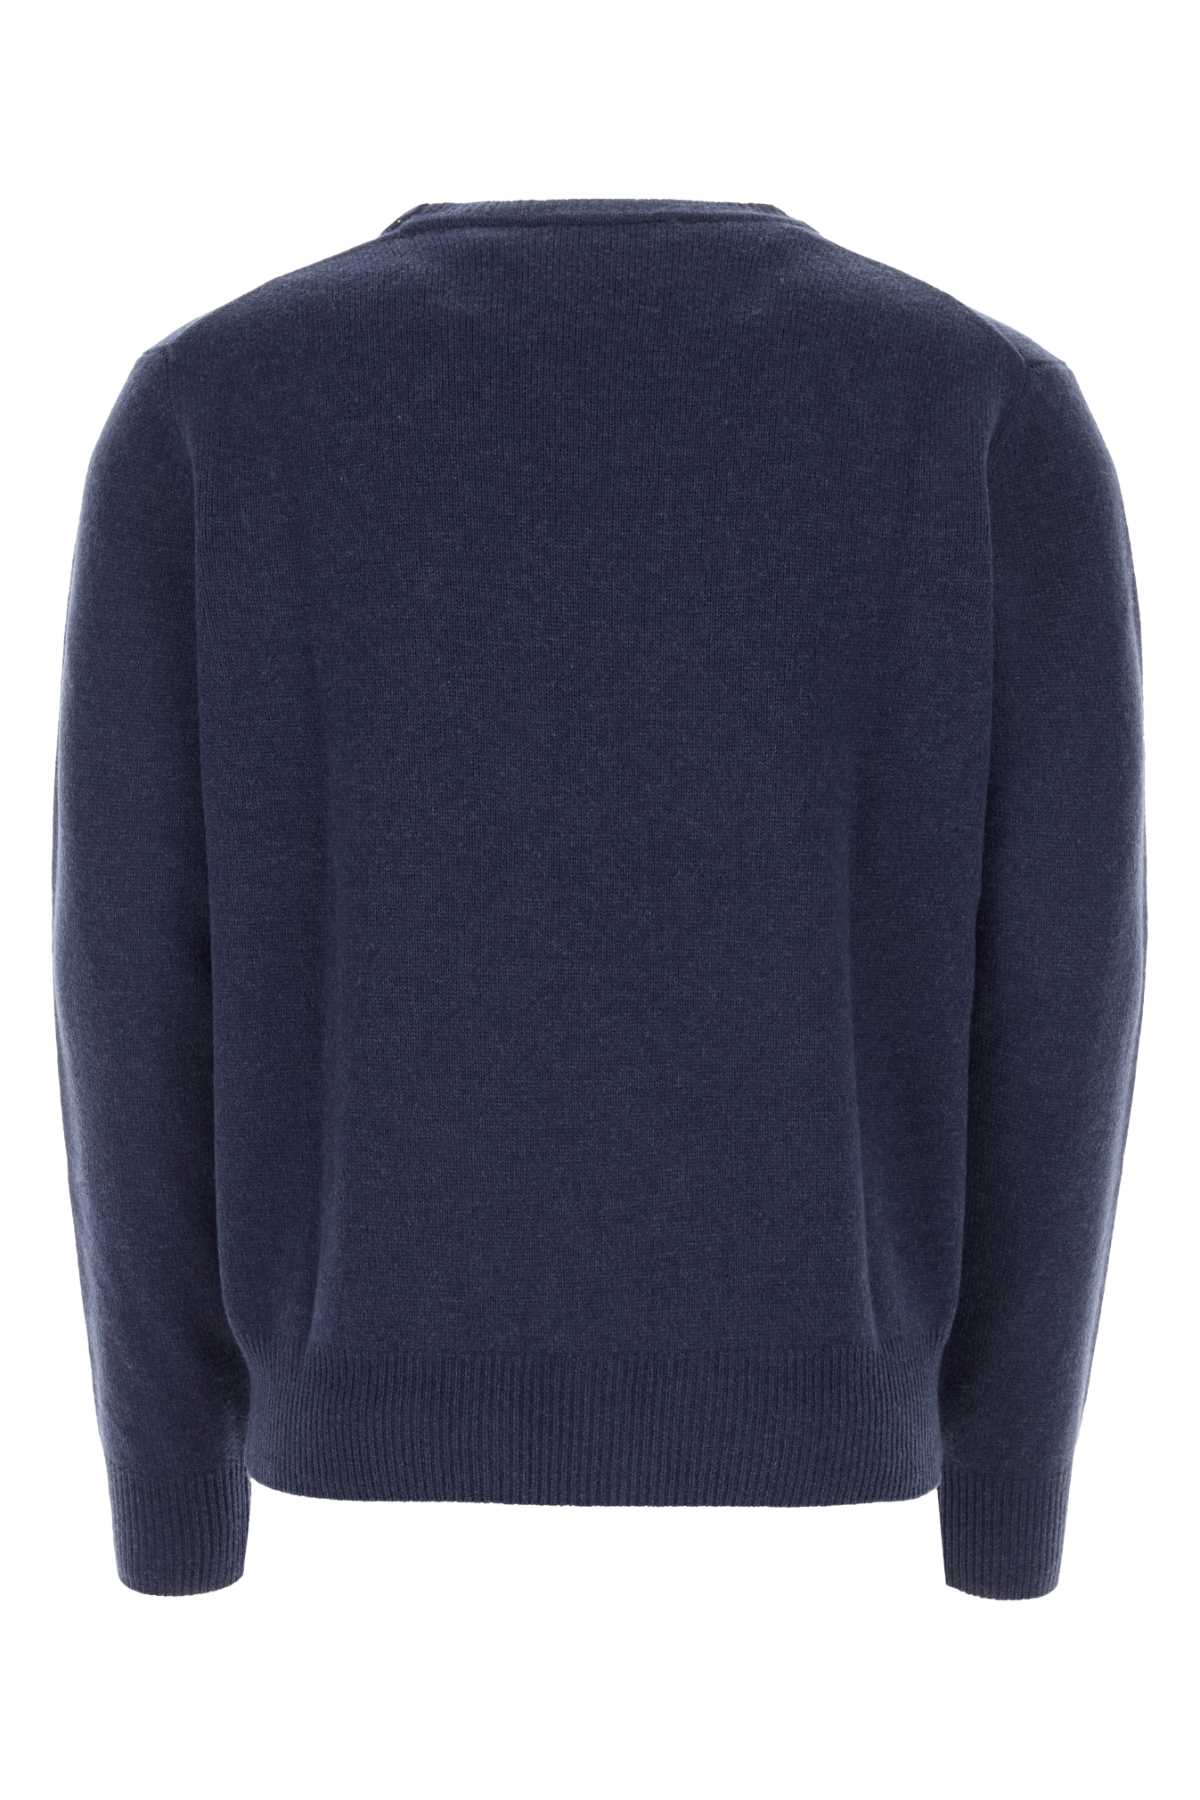 Vivienne Westwood Blue Wool Blend Alex Sweater In Denim